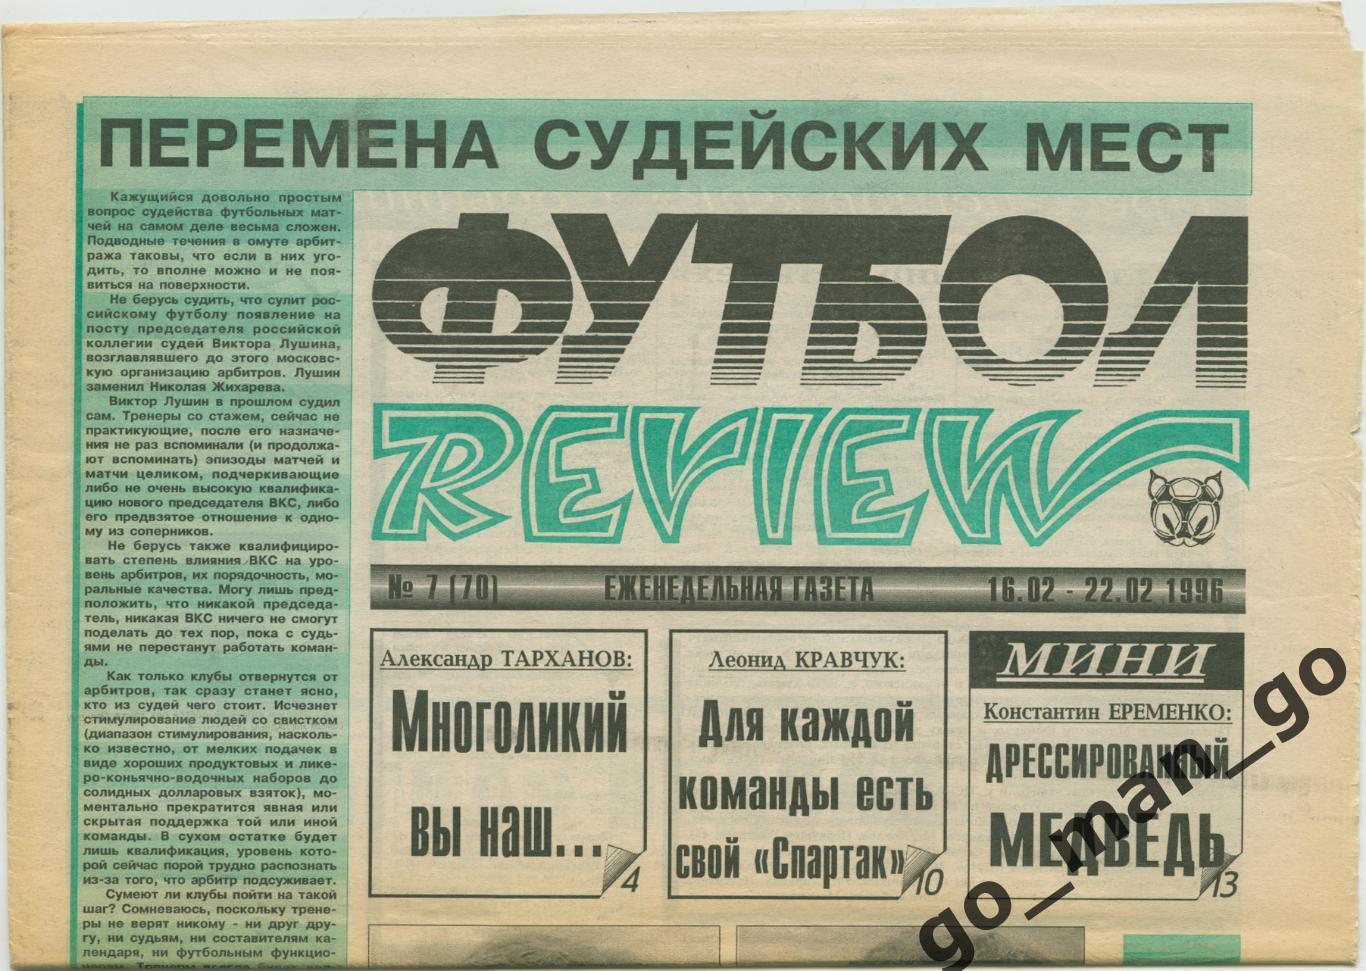 Еженедельник Футбол-Review (Футбол-Ревю), 16-22.02.1996, № 7.